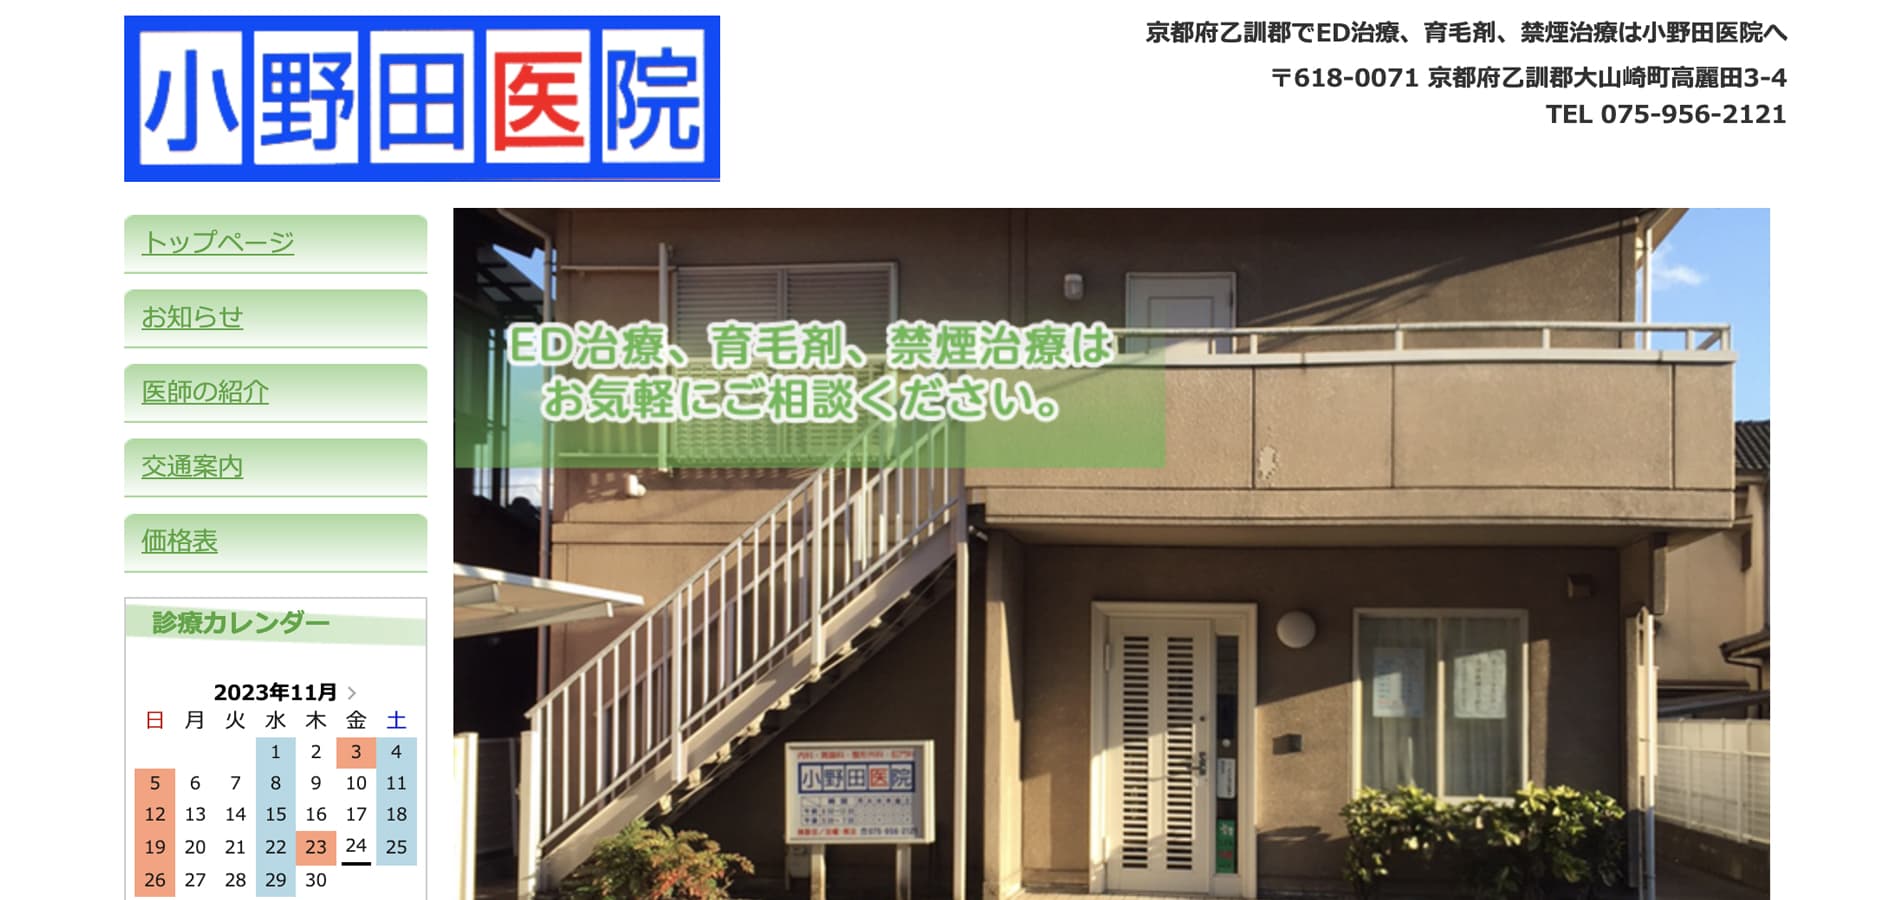 小野田医院